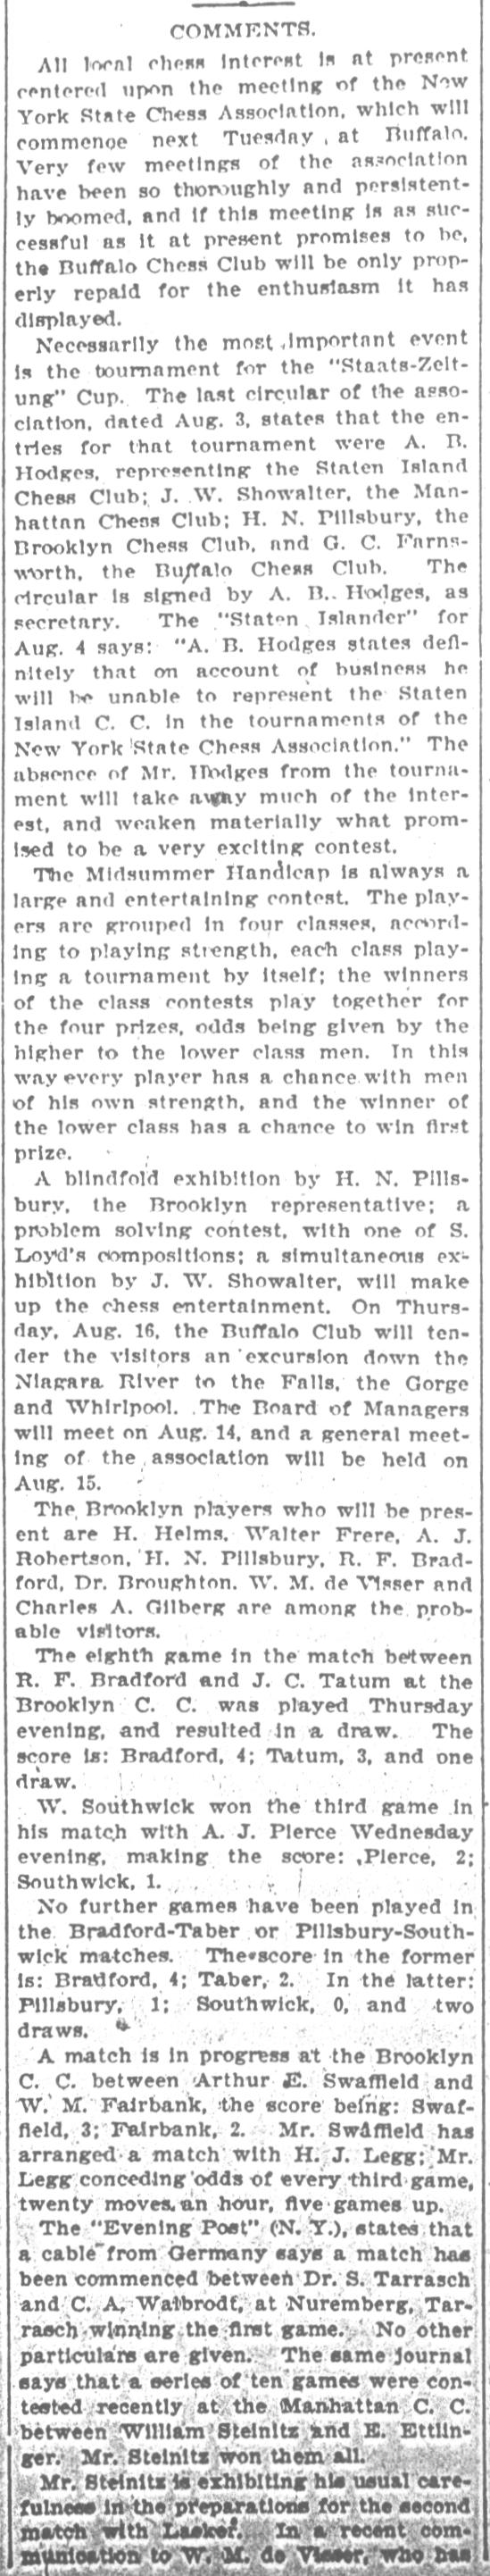 1894.08.11-02 Brooklyn Daily Standard-Union.jpg